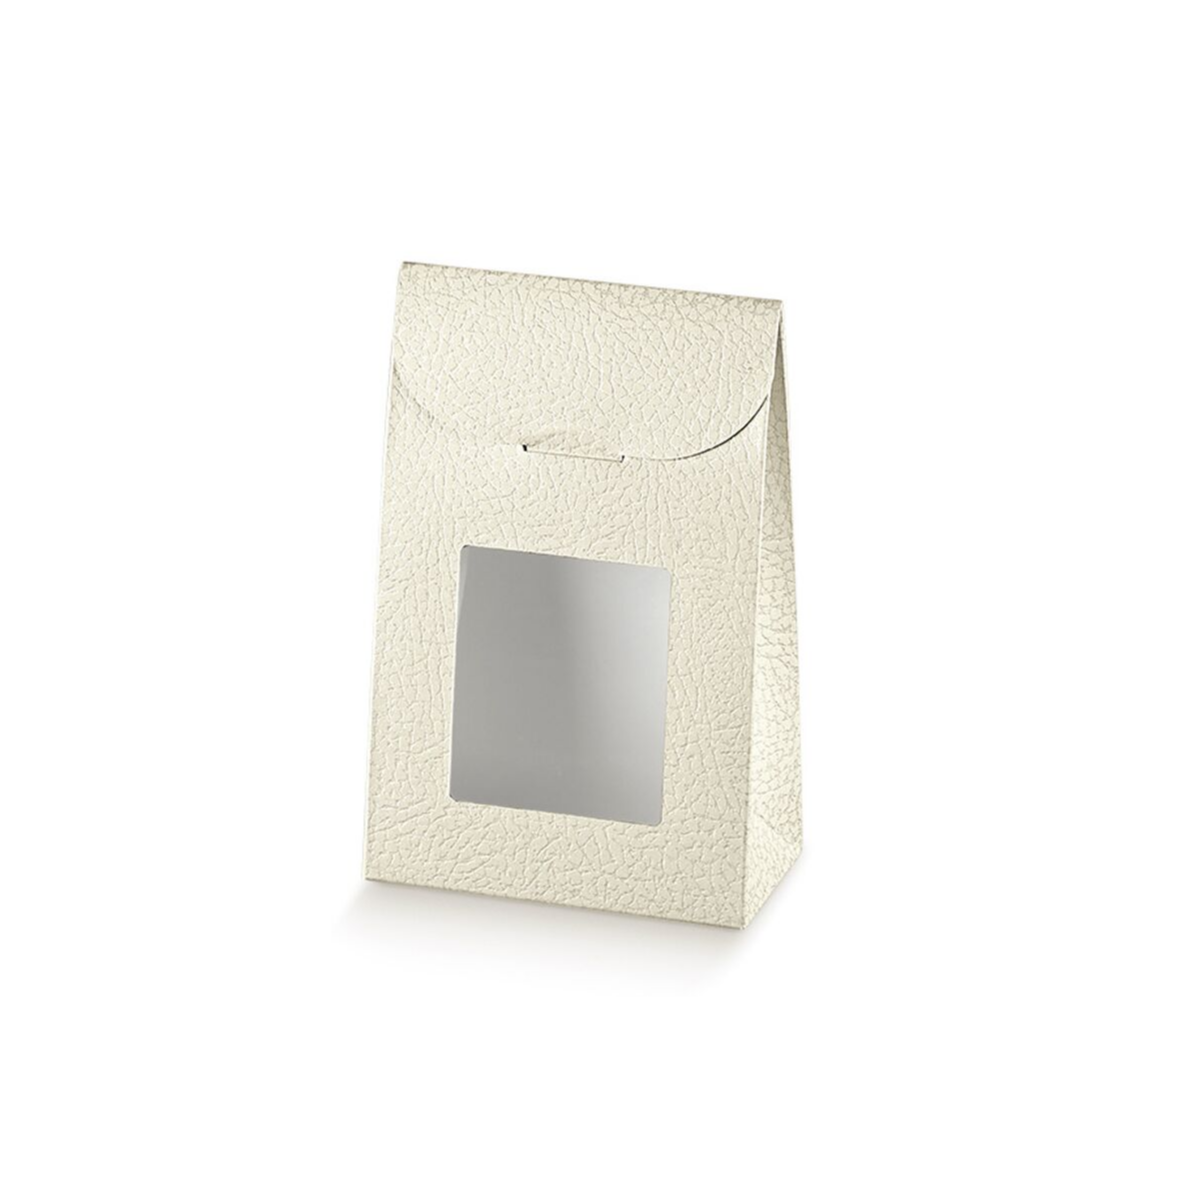 10 pz Sacchetto con finestra in cartone bianco € 0,51 Cad + Iva